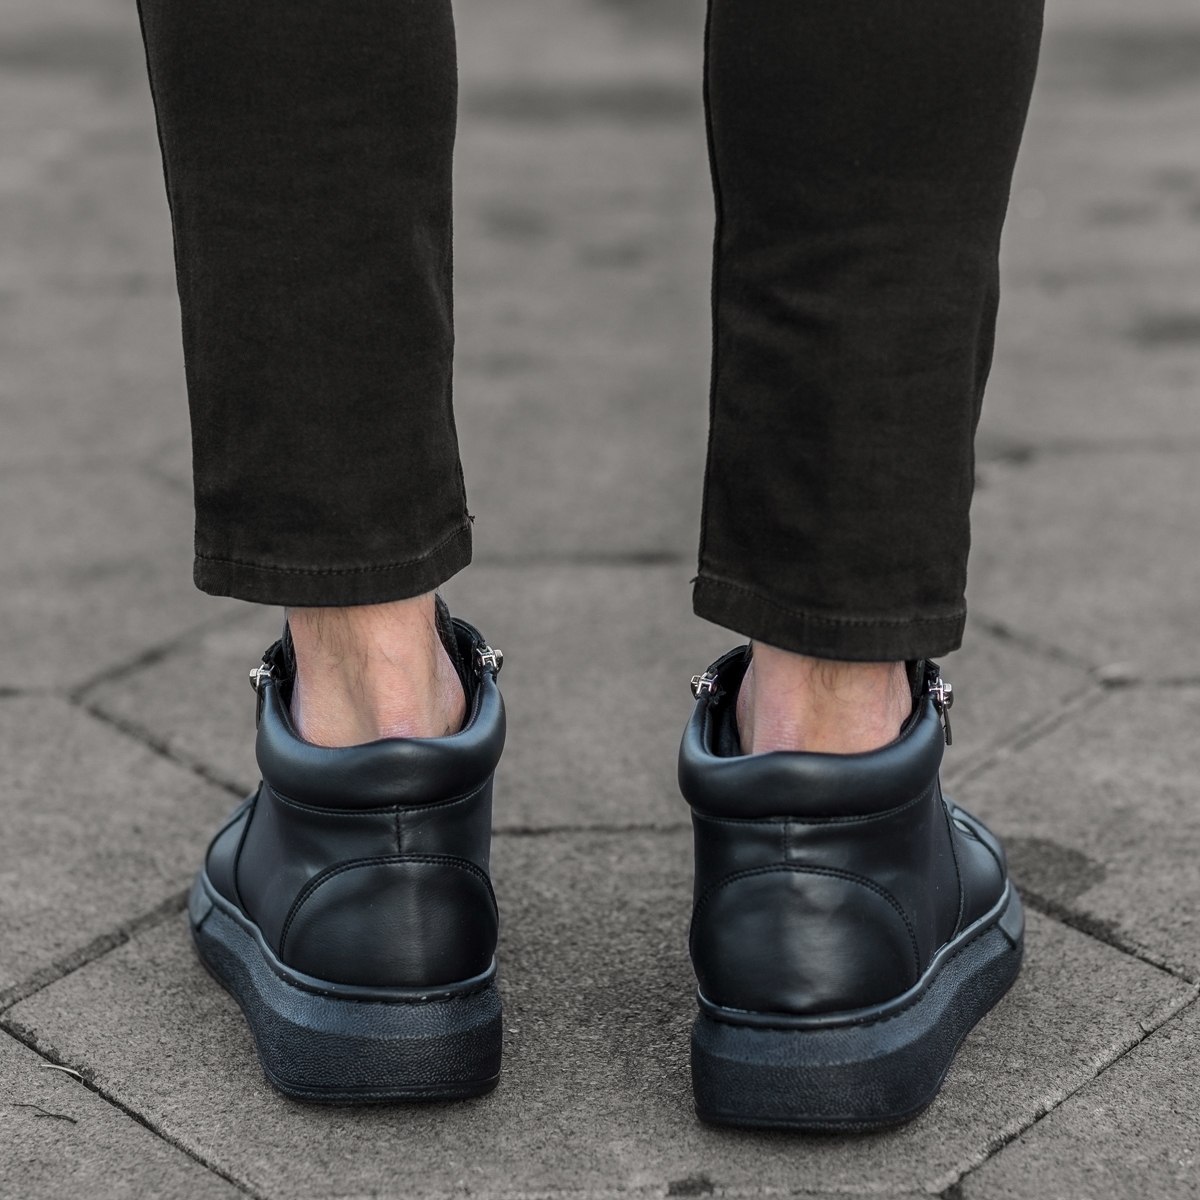 Herren High Top Sneakers Designer Schuhe mit Reissverschluss in schwarz - 5